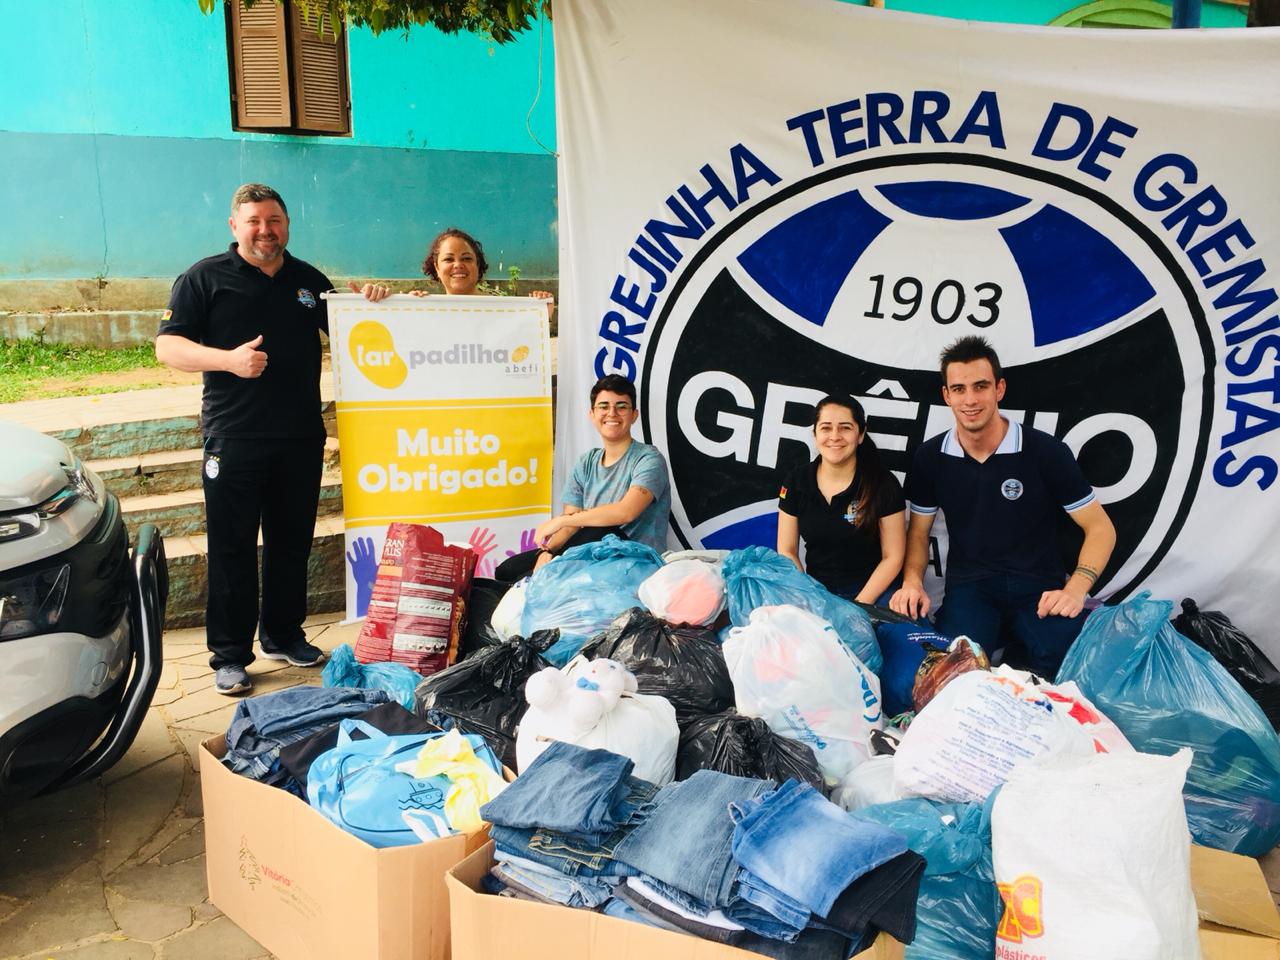 SOCIALIZAÇÃO: Consulado do Grêmio realiza arrecadação e doação para o Lar Padilha